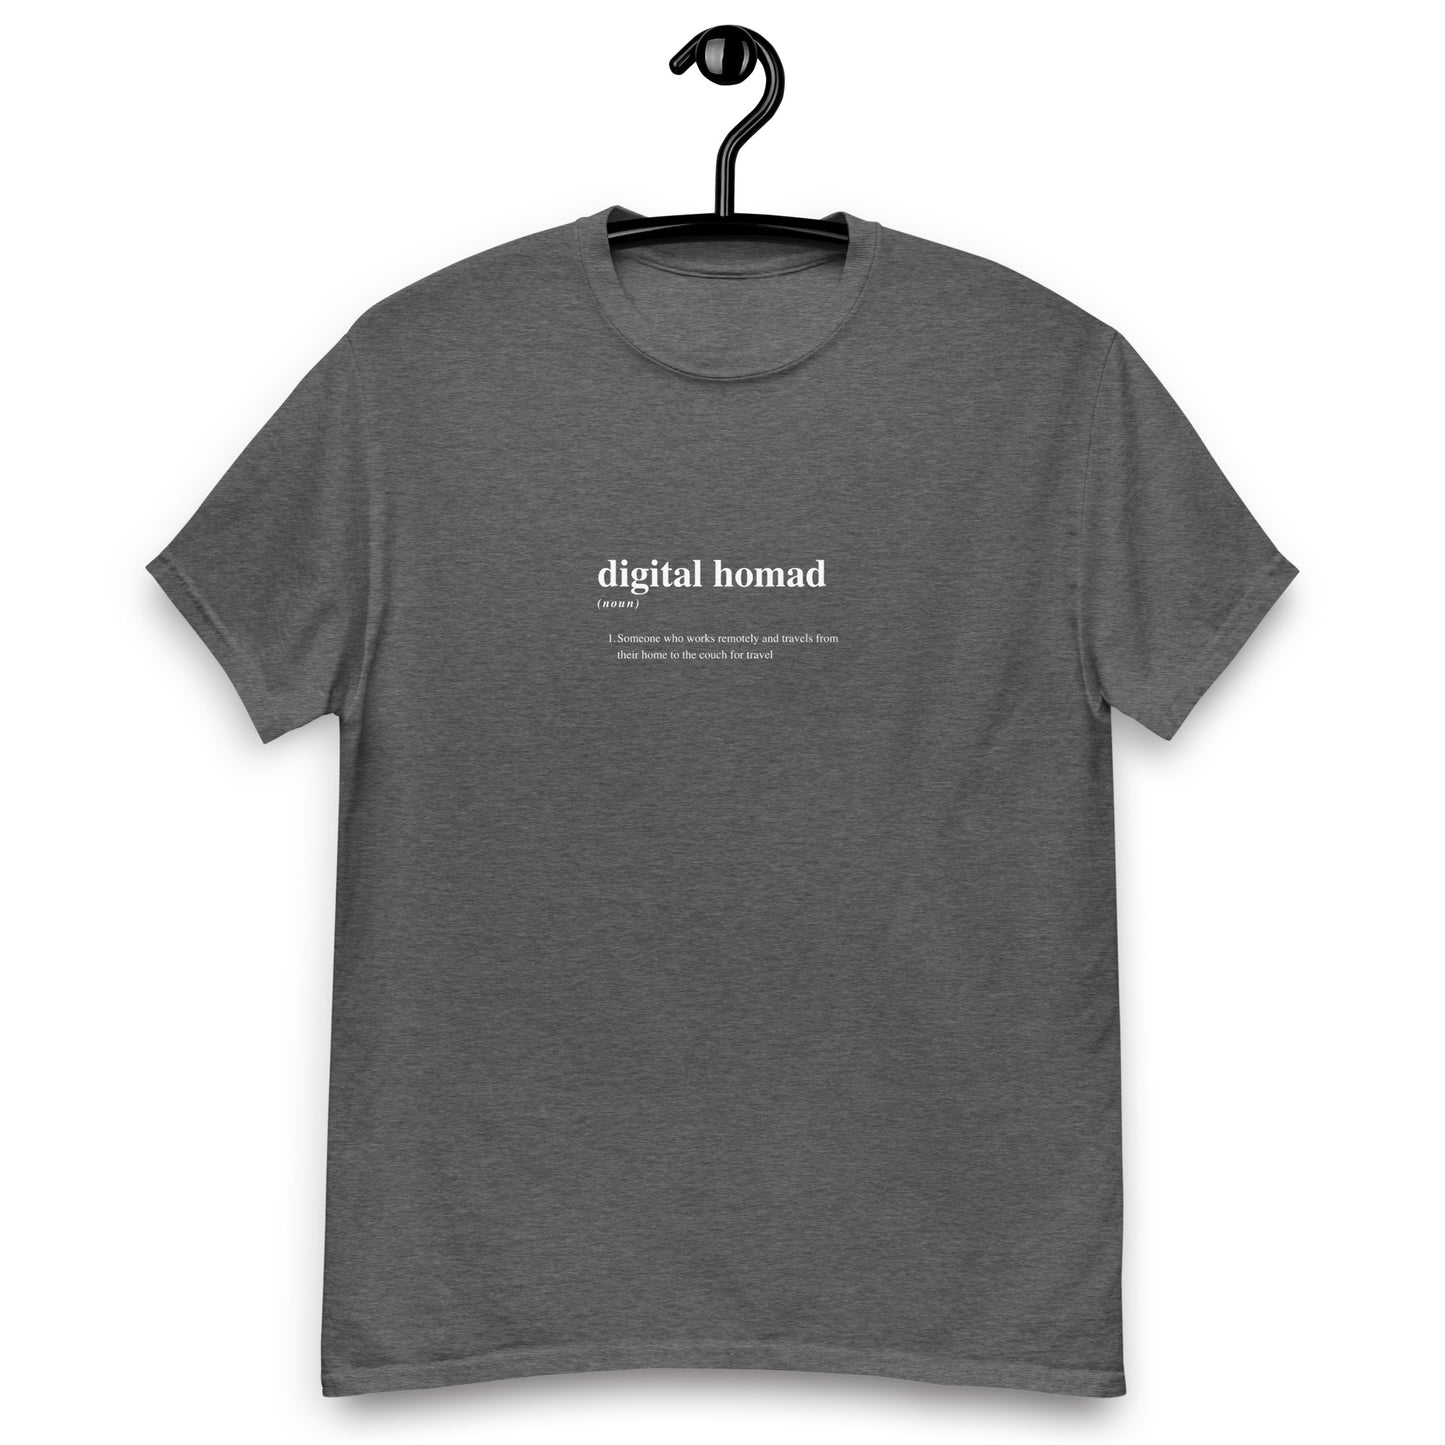 Digital Homad Tee Shirt